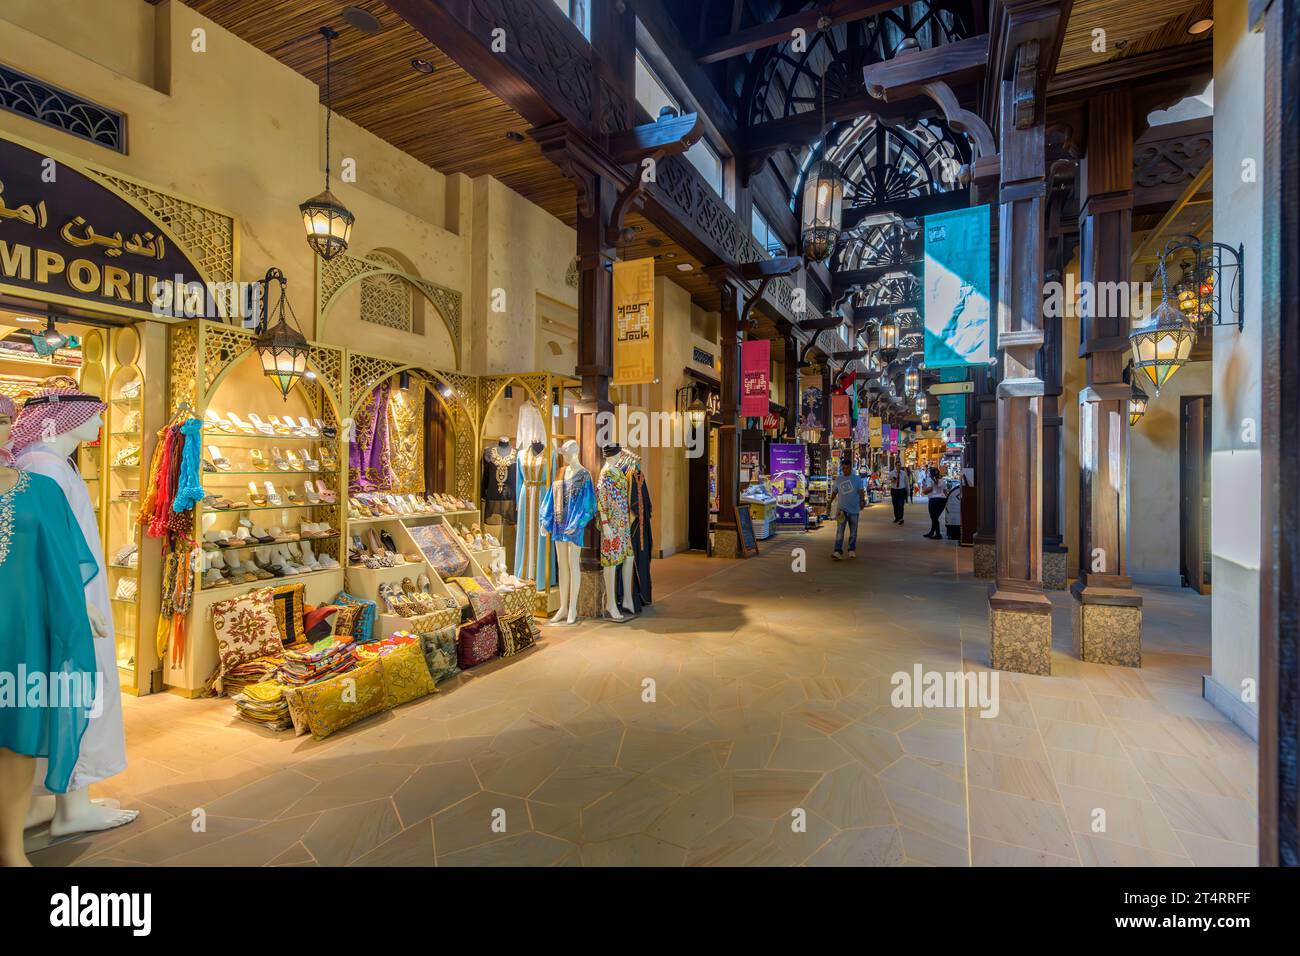 Magasins colorés vendant des cadeaux, des souvenirs et des vêtements à l'intérieur du Souk Madinat Jumeirah, un marché commercial haut de gamme et un centre commercial à Dubaï, aux Émirats arabes Unis Banque D'Images